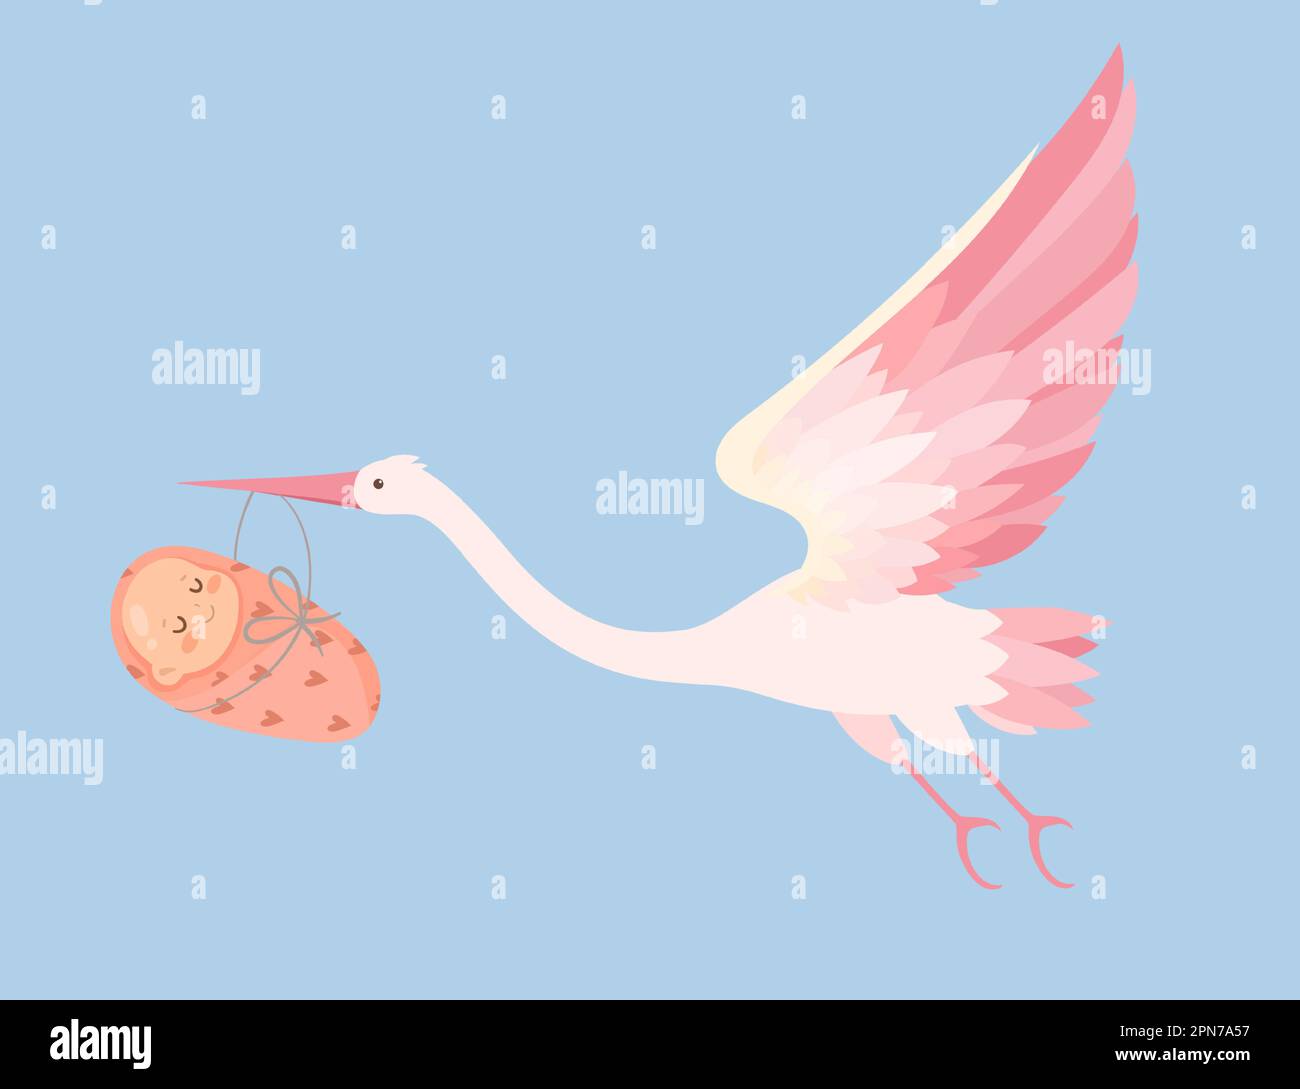 Fliegender Storch, der das Baby in seinem Schnabelvektor trägt Stock Vektor